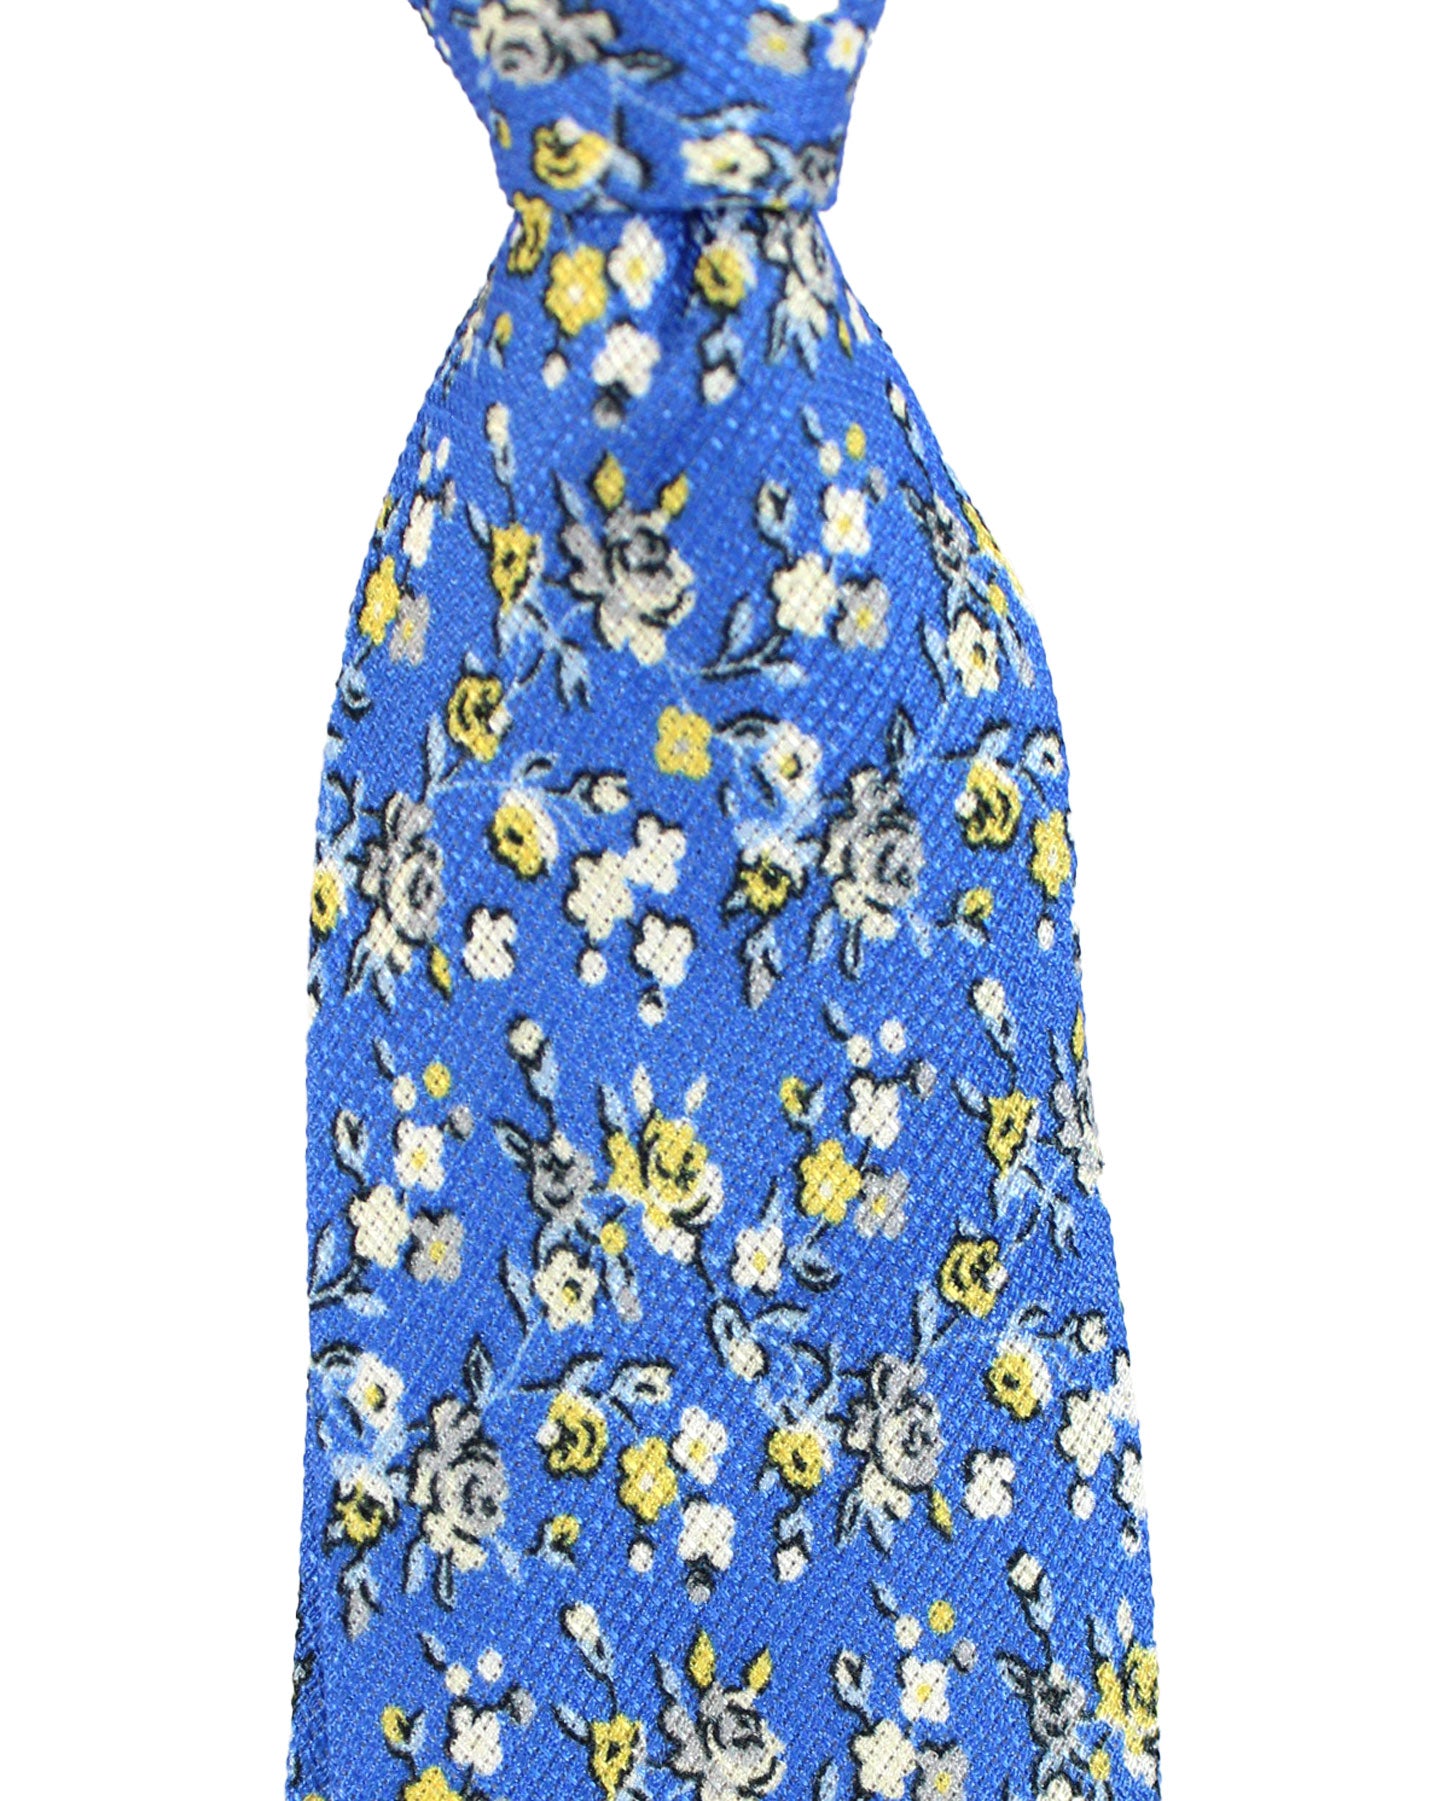 Kiton Tie Blue Floral - Sevenfold Necktie